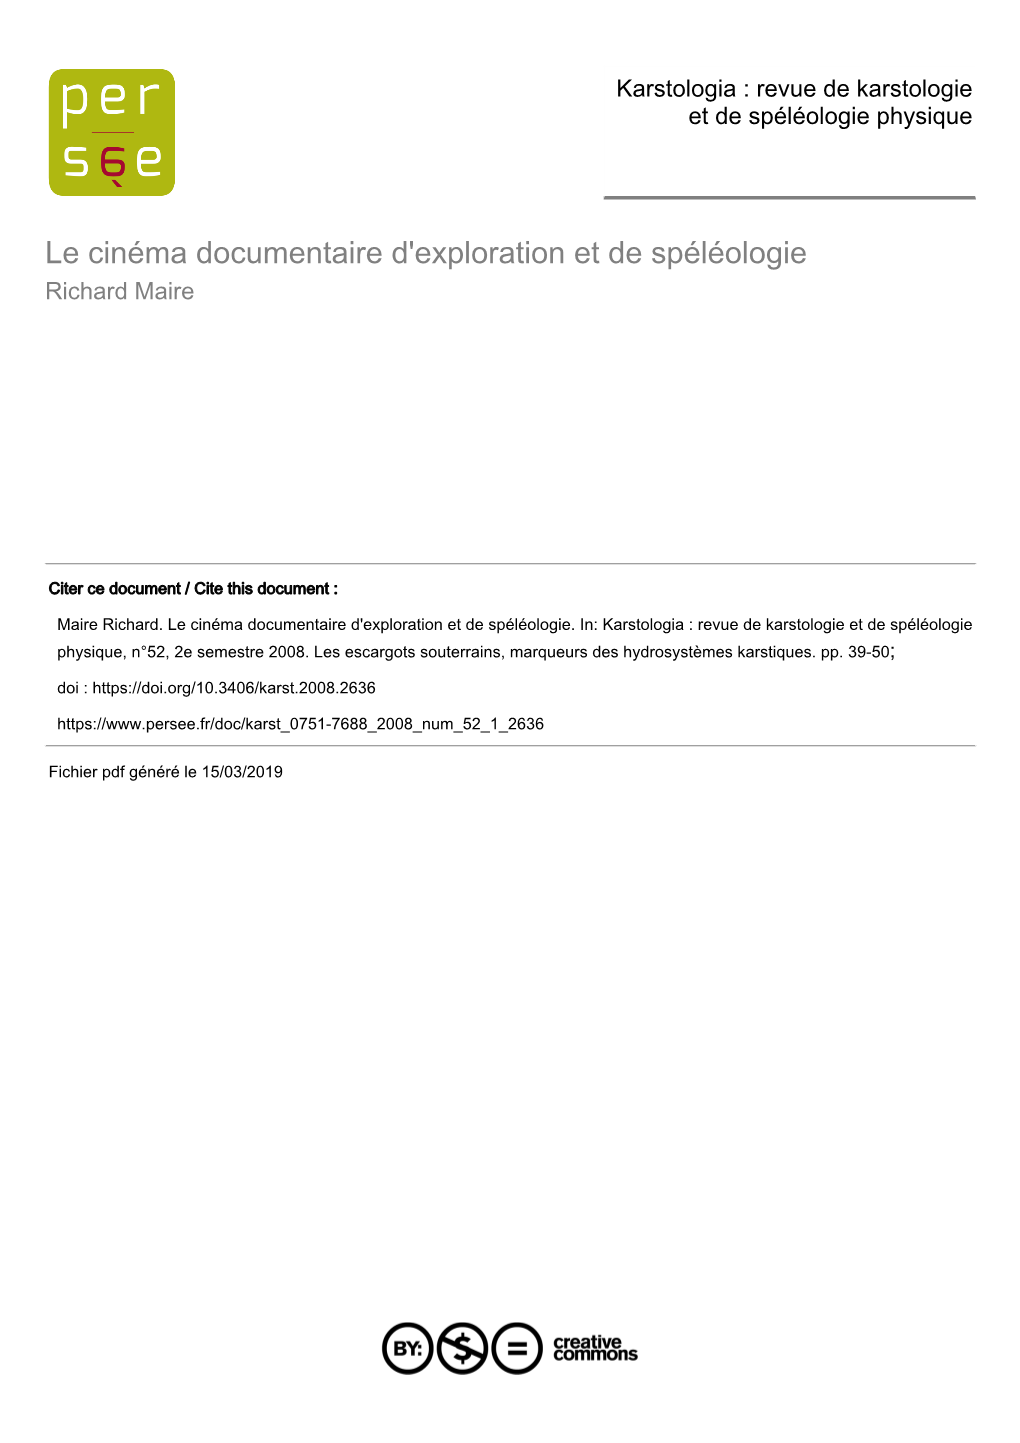 Le Cinéma Documentaire D'exploration Et De Spéléologie Richard Maire